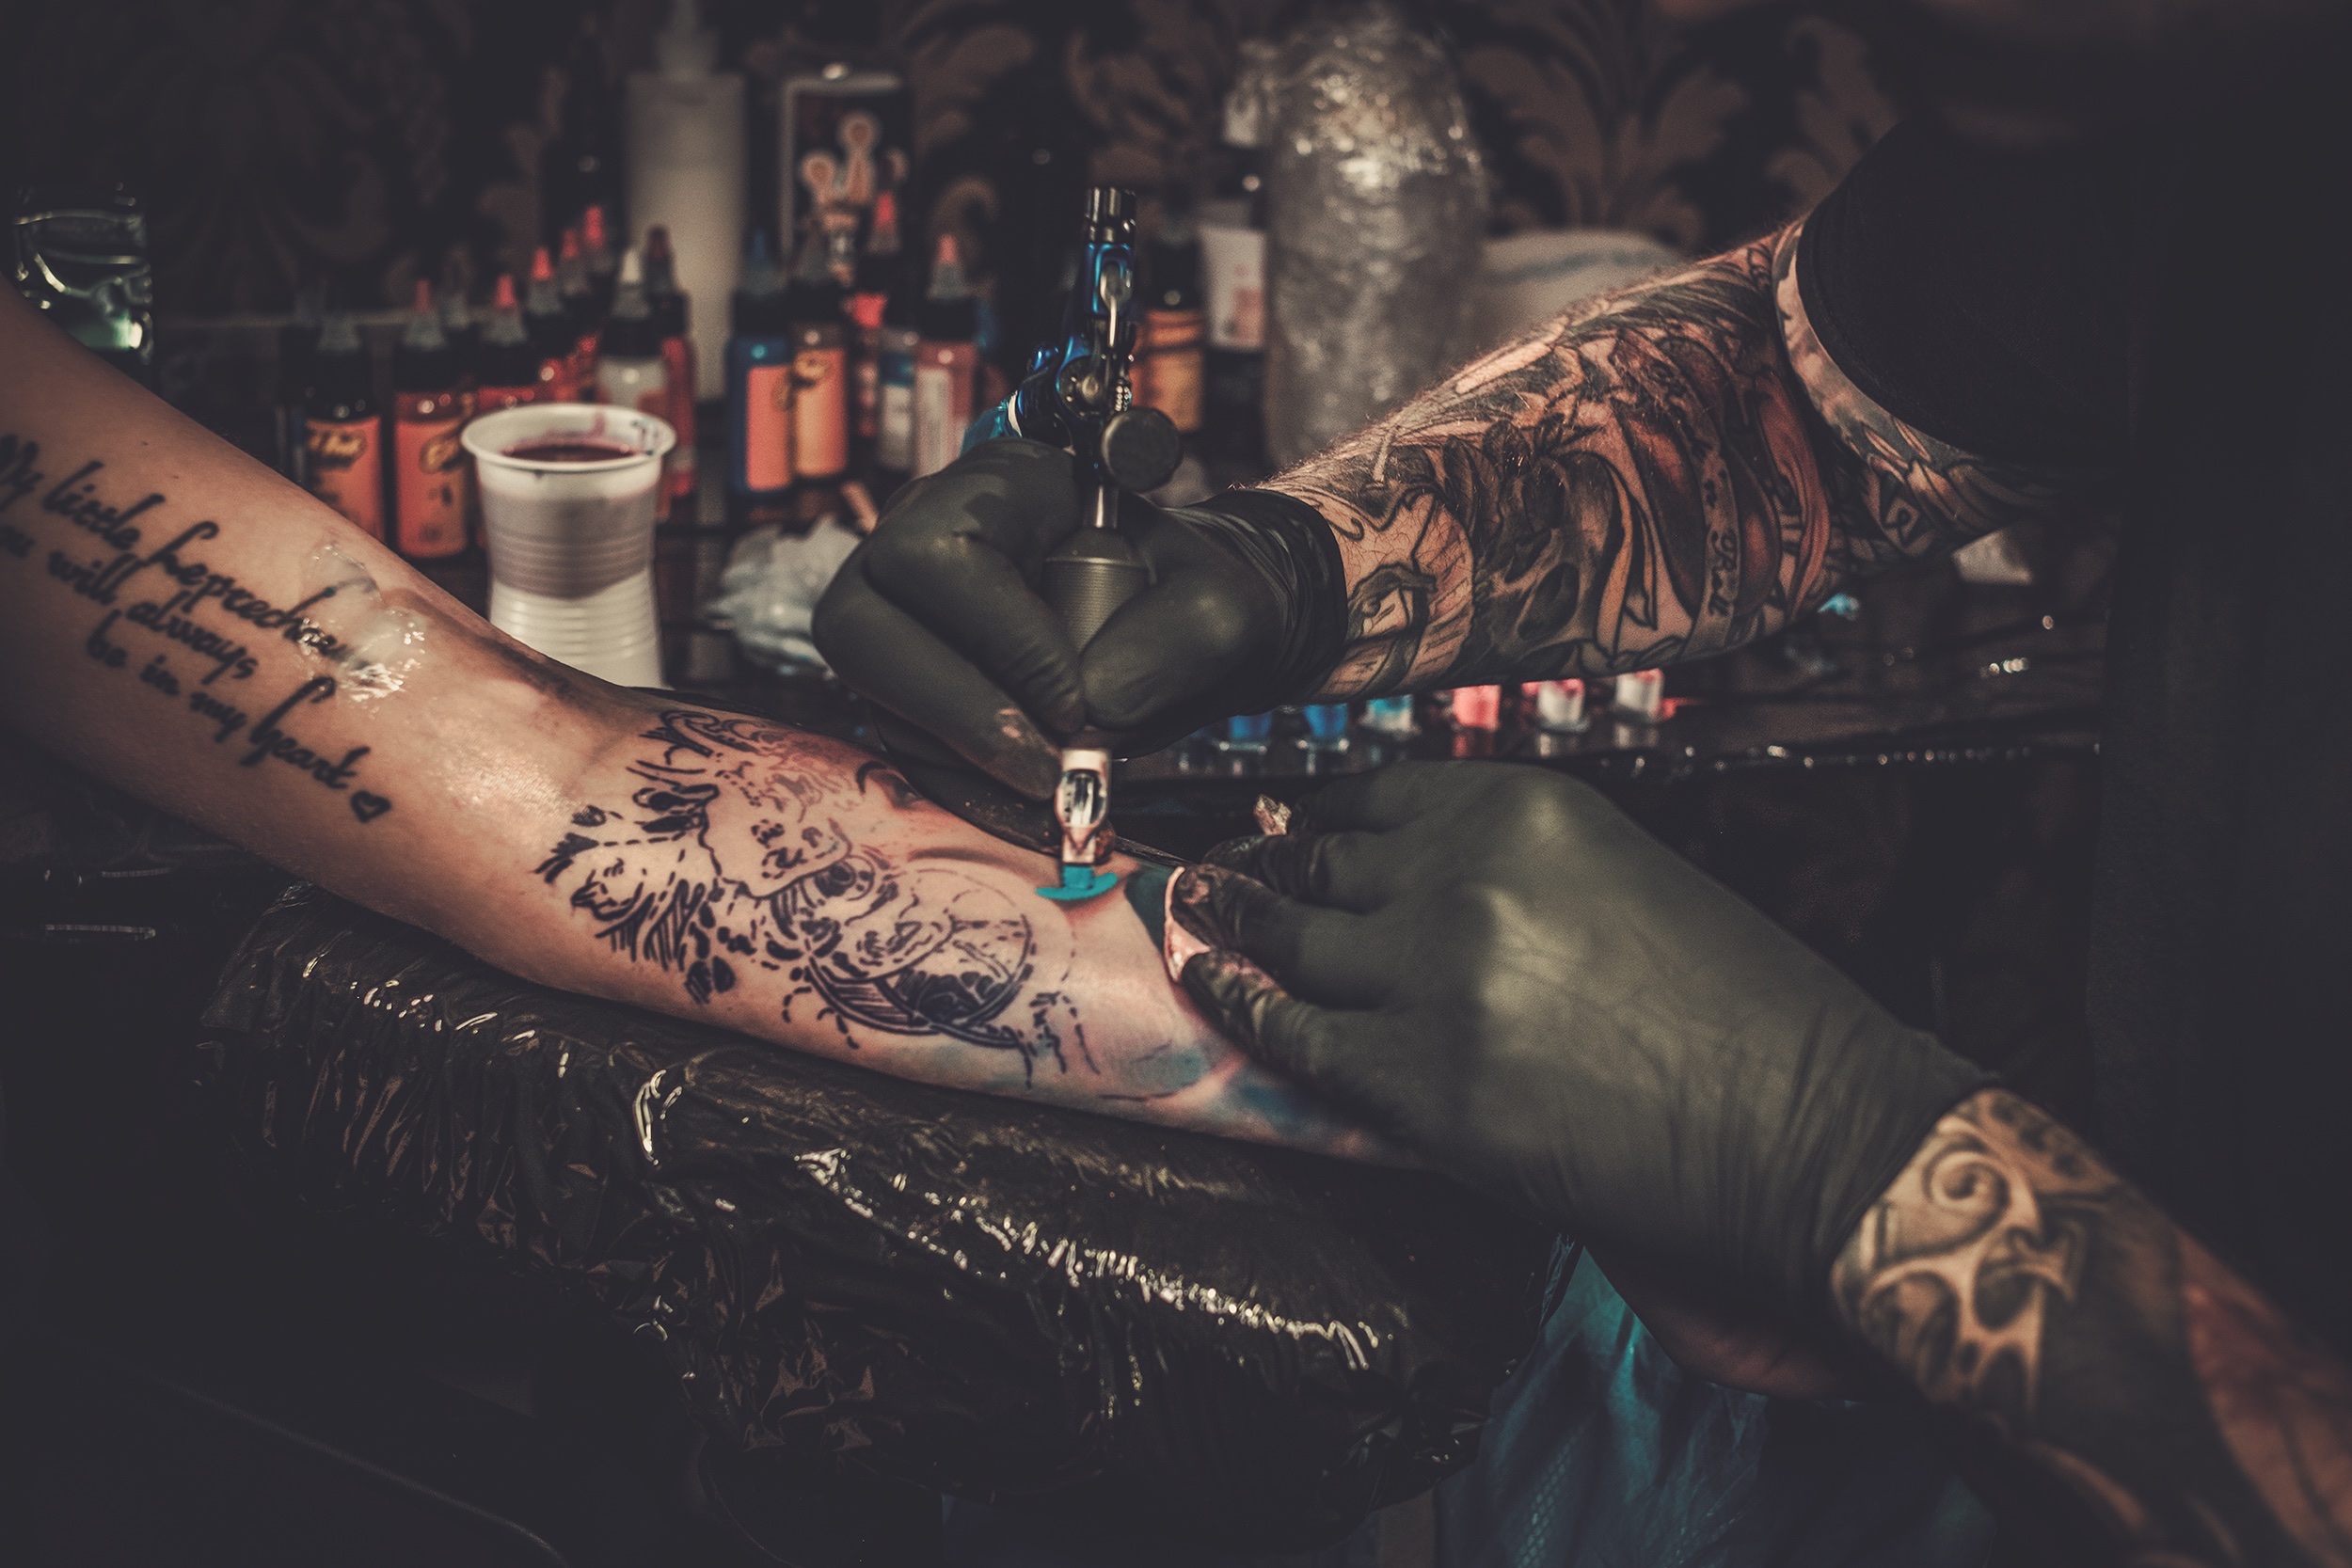 Percorso tatuaggi, piercing e trucco semipermanente upskilling